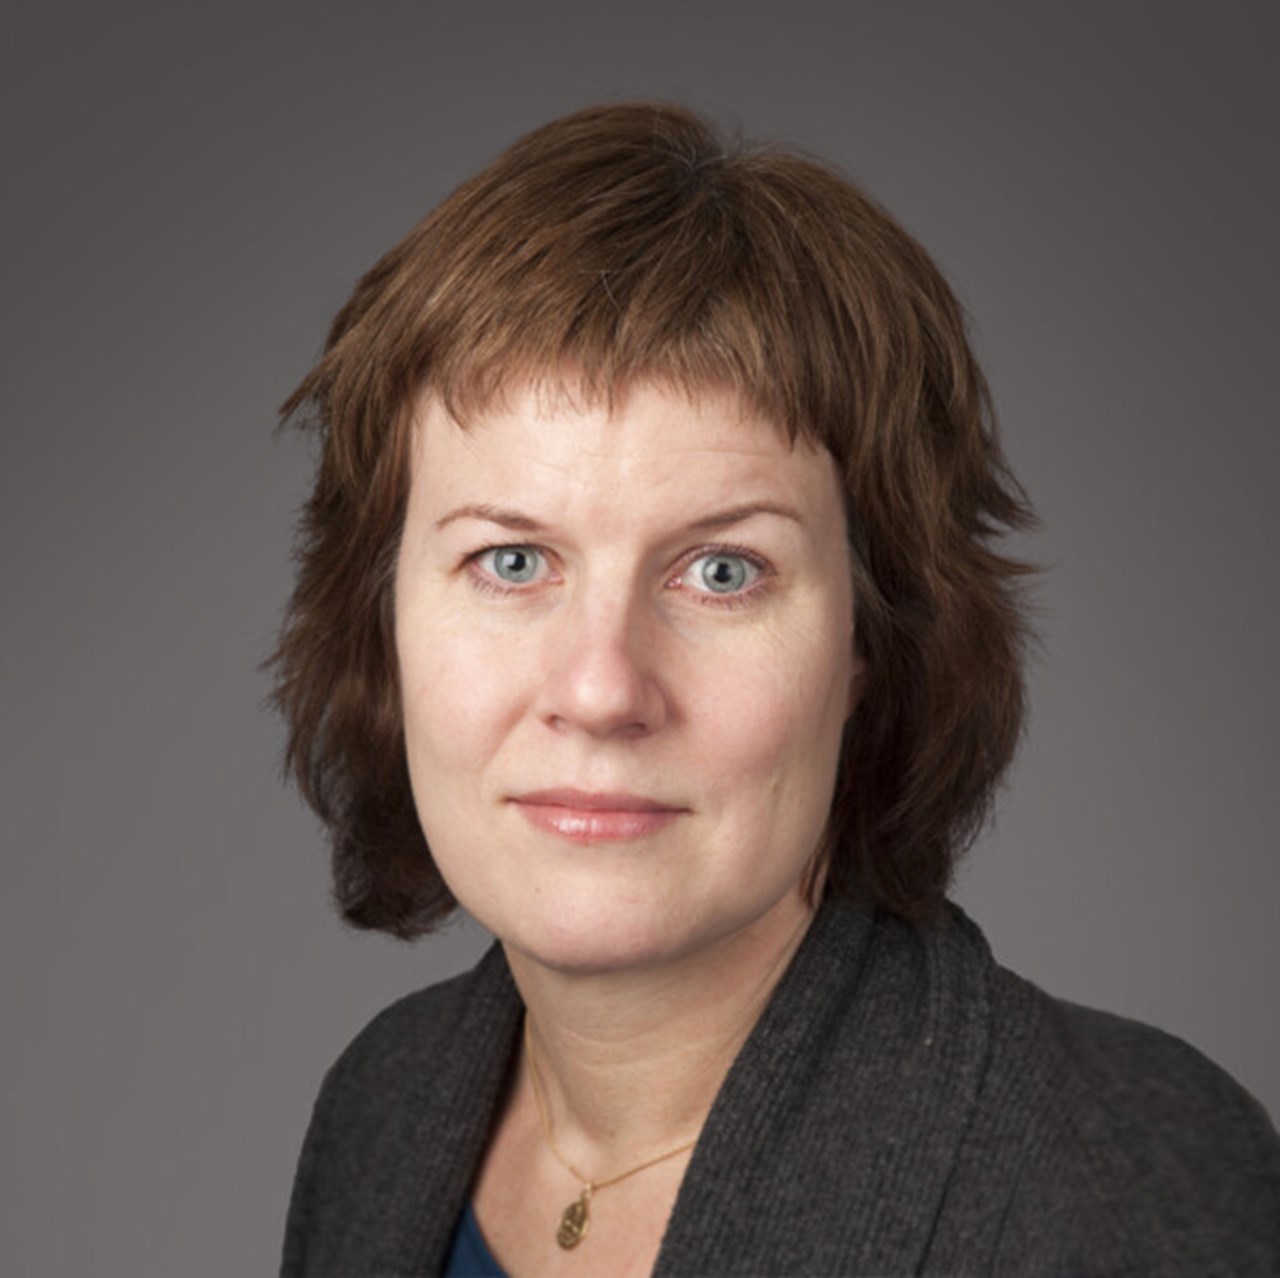 Porträtt på Jessika Wide, Anknuten som forskare och lärare i statsvetenskap vid Umeå universitet